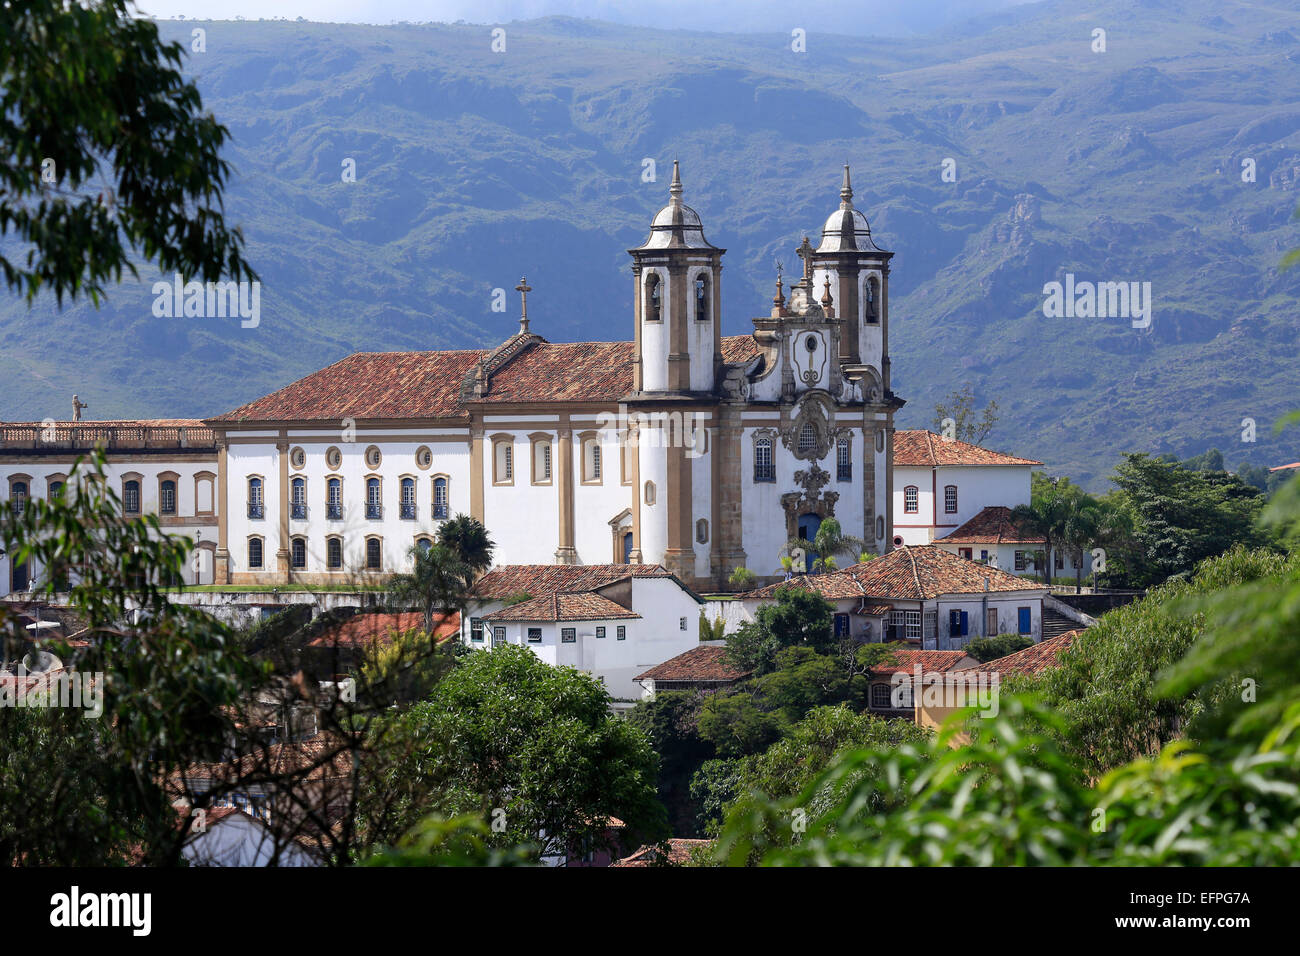 Notre Dame de Carmo church dans le centre-ville coloniale portugaise, l'UNESCO, Ouro Preto, Minas Gerais, Brésil, Amérique du Sud Banque D'Images